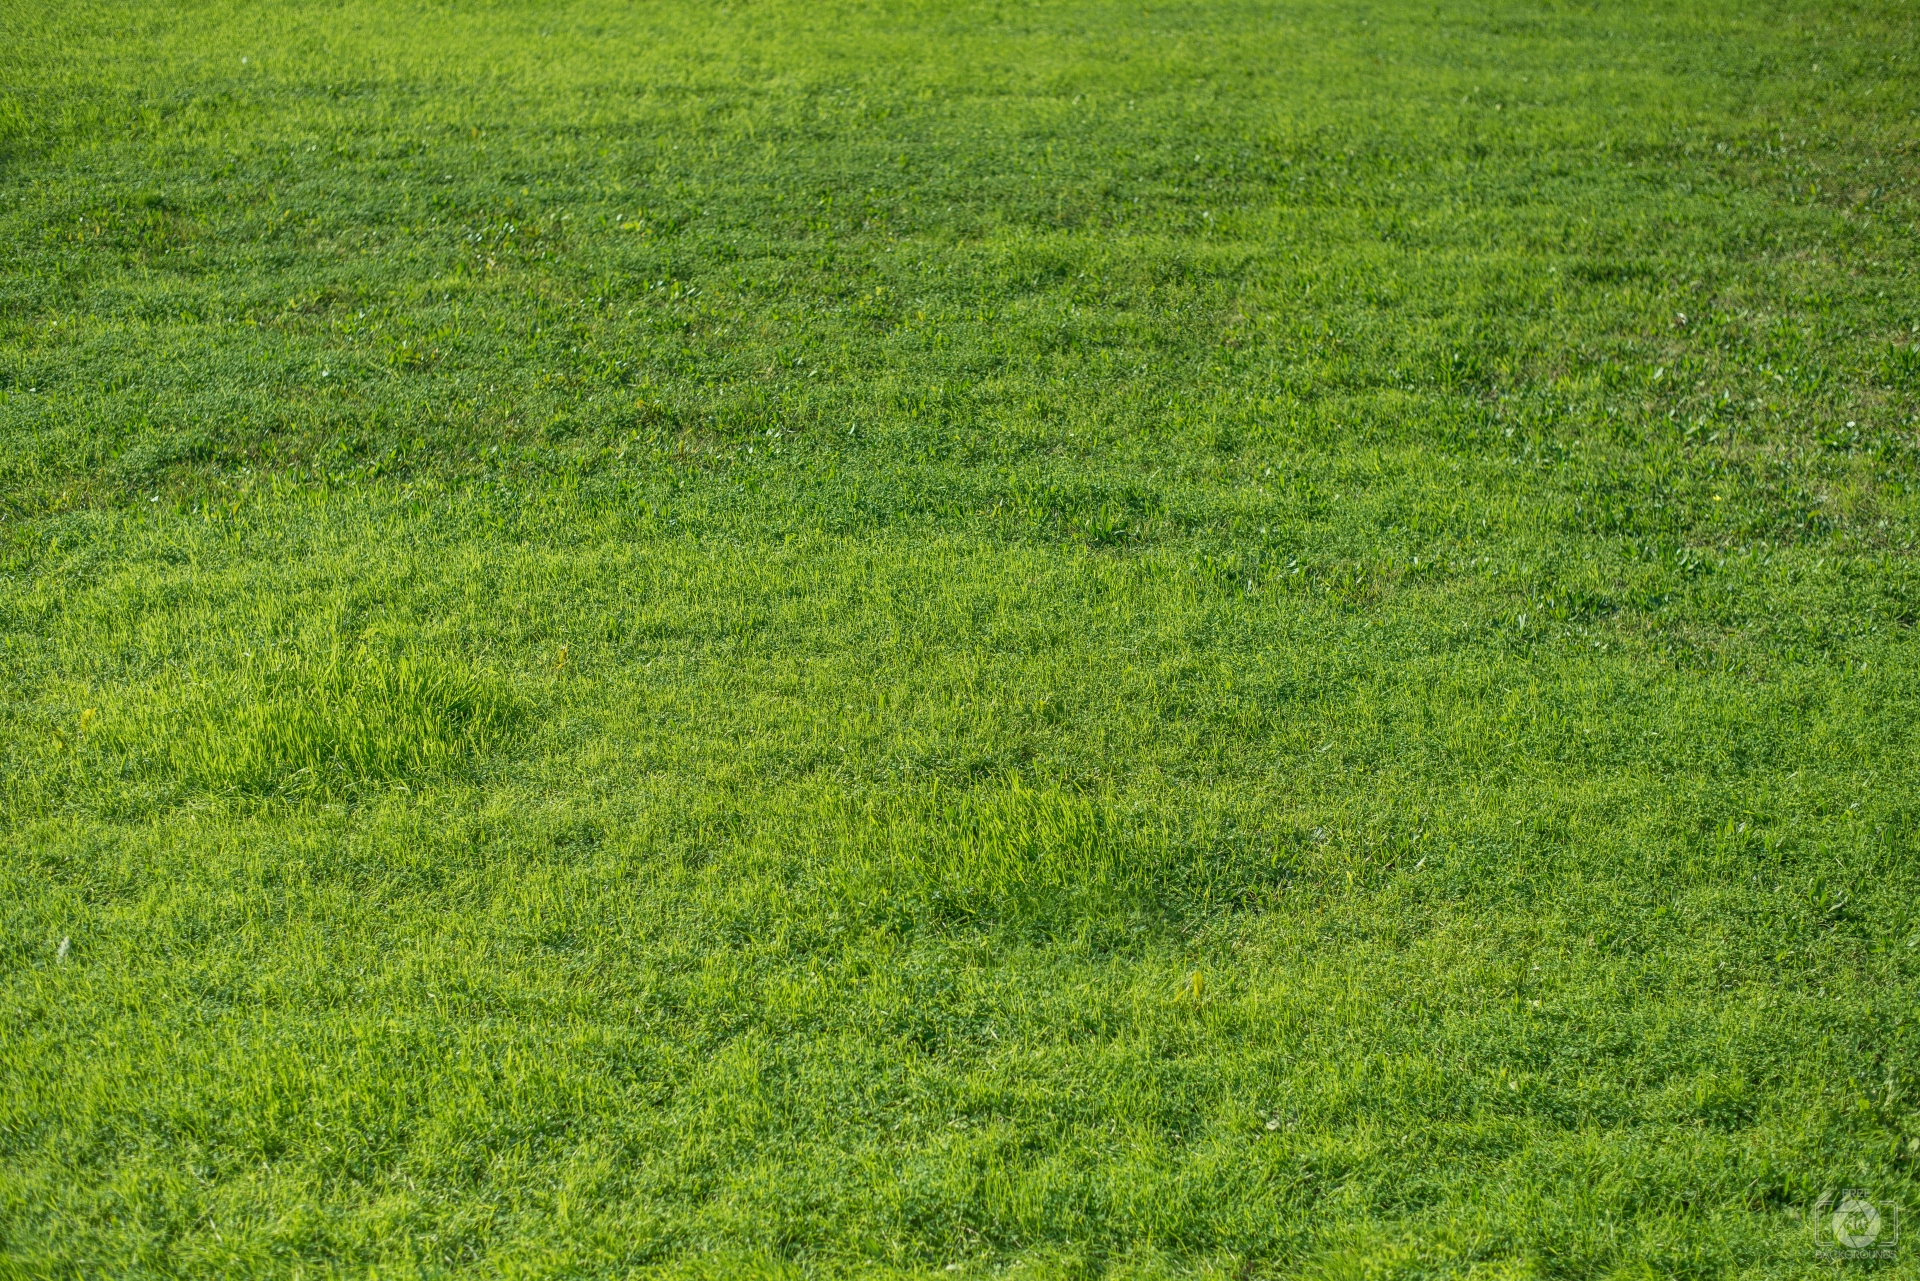 Green grass texture photo